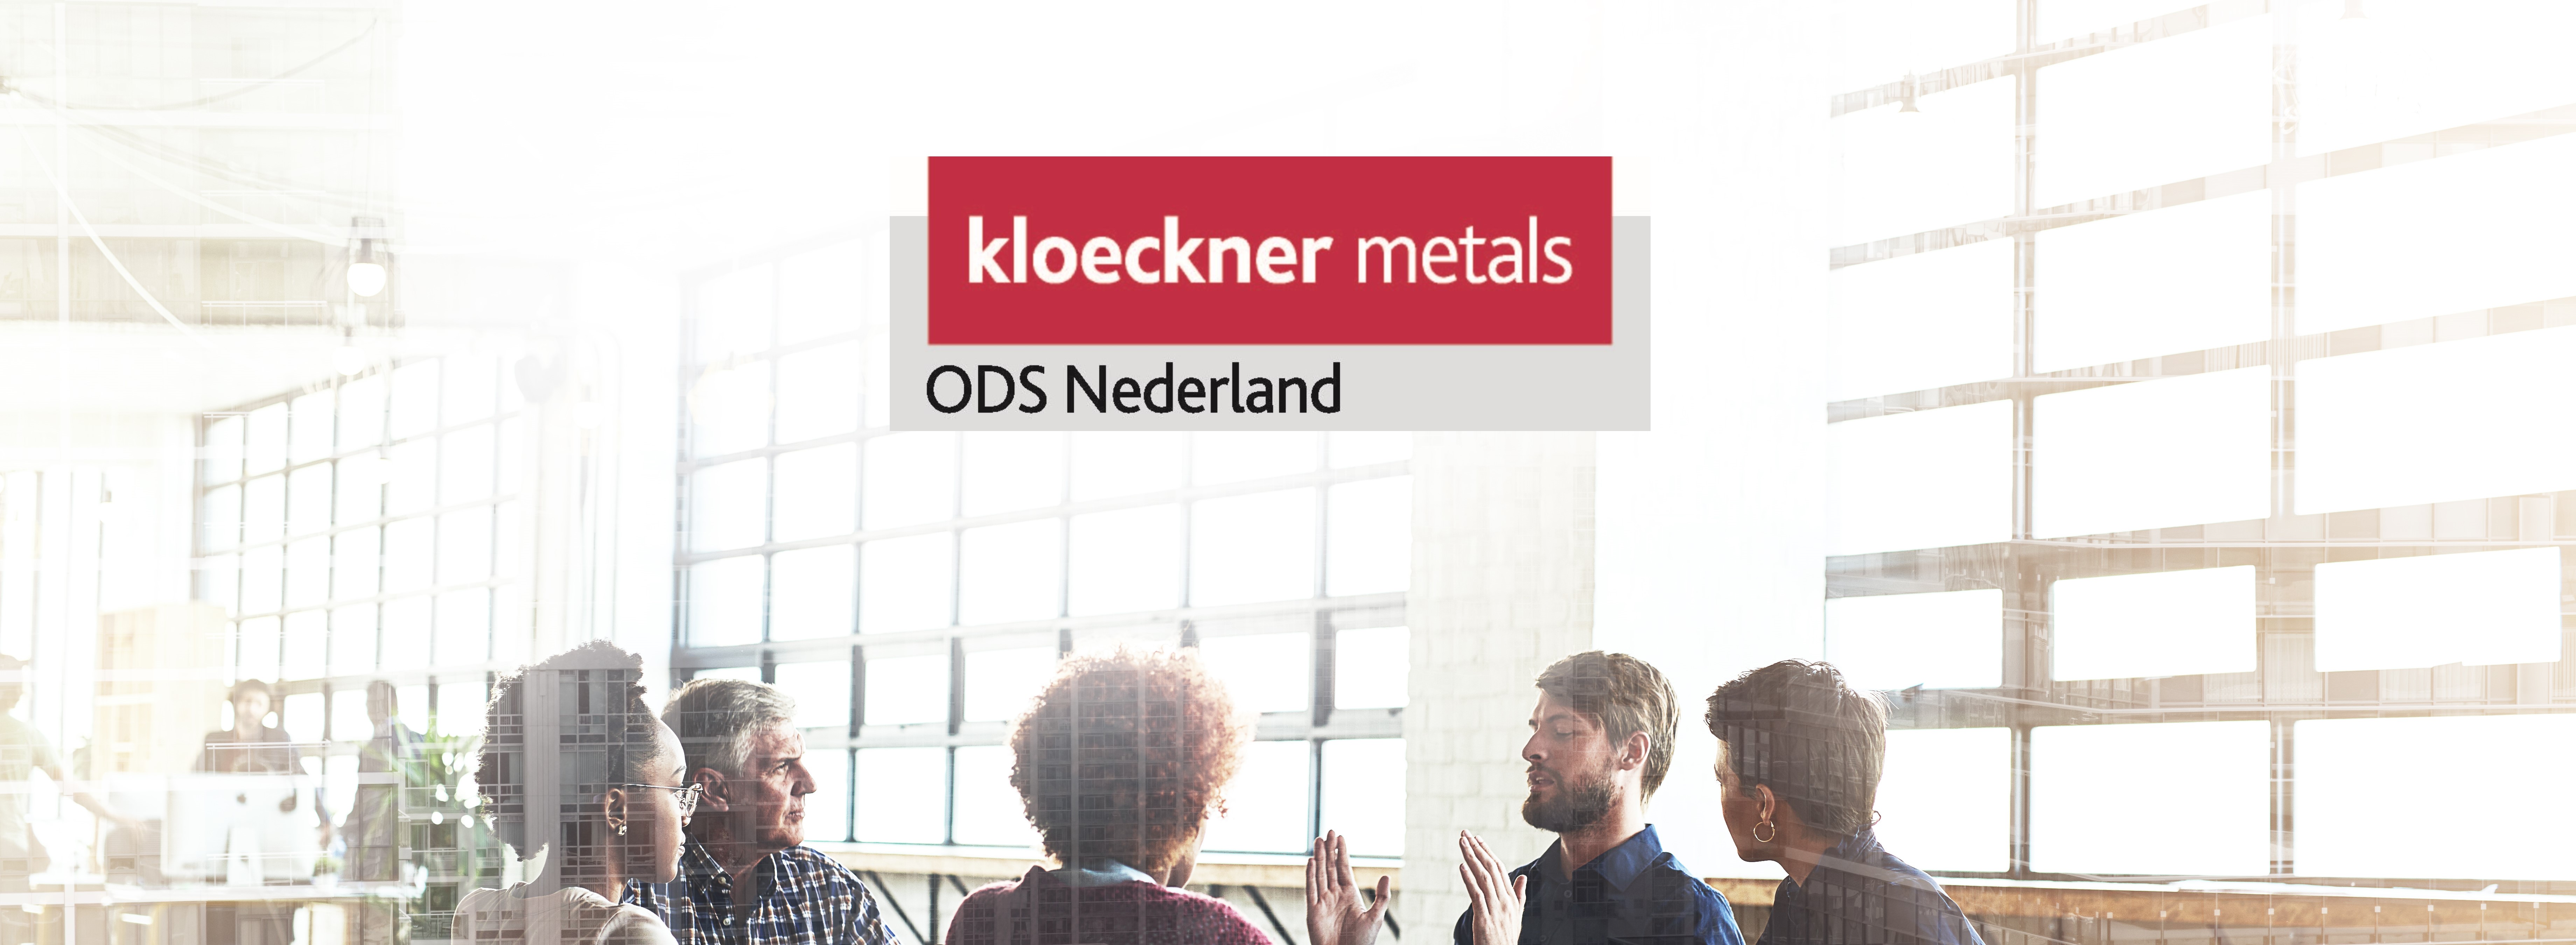 IT Business Partner | Kloeckner Metals ODS